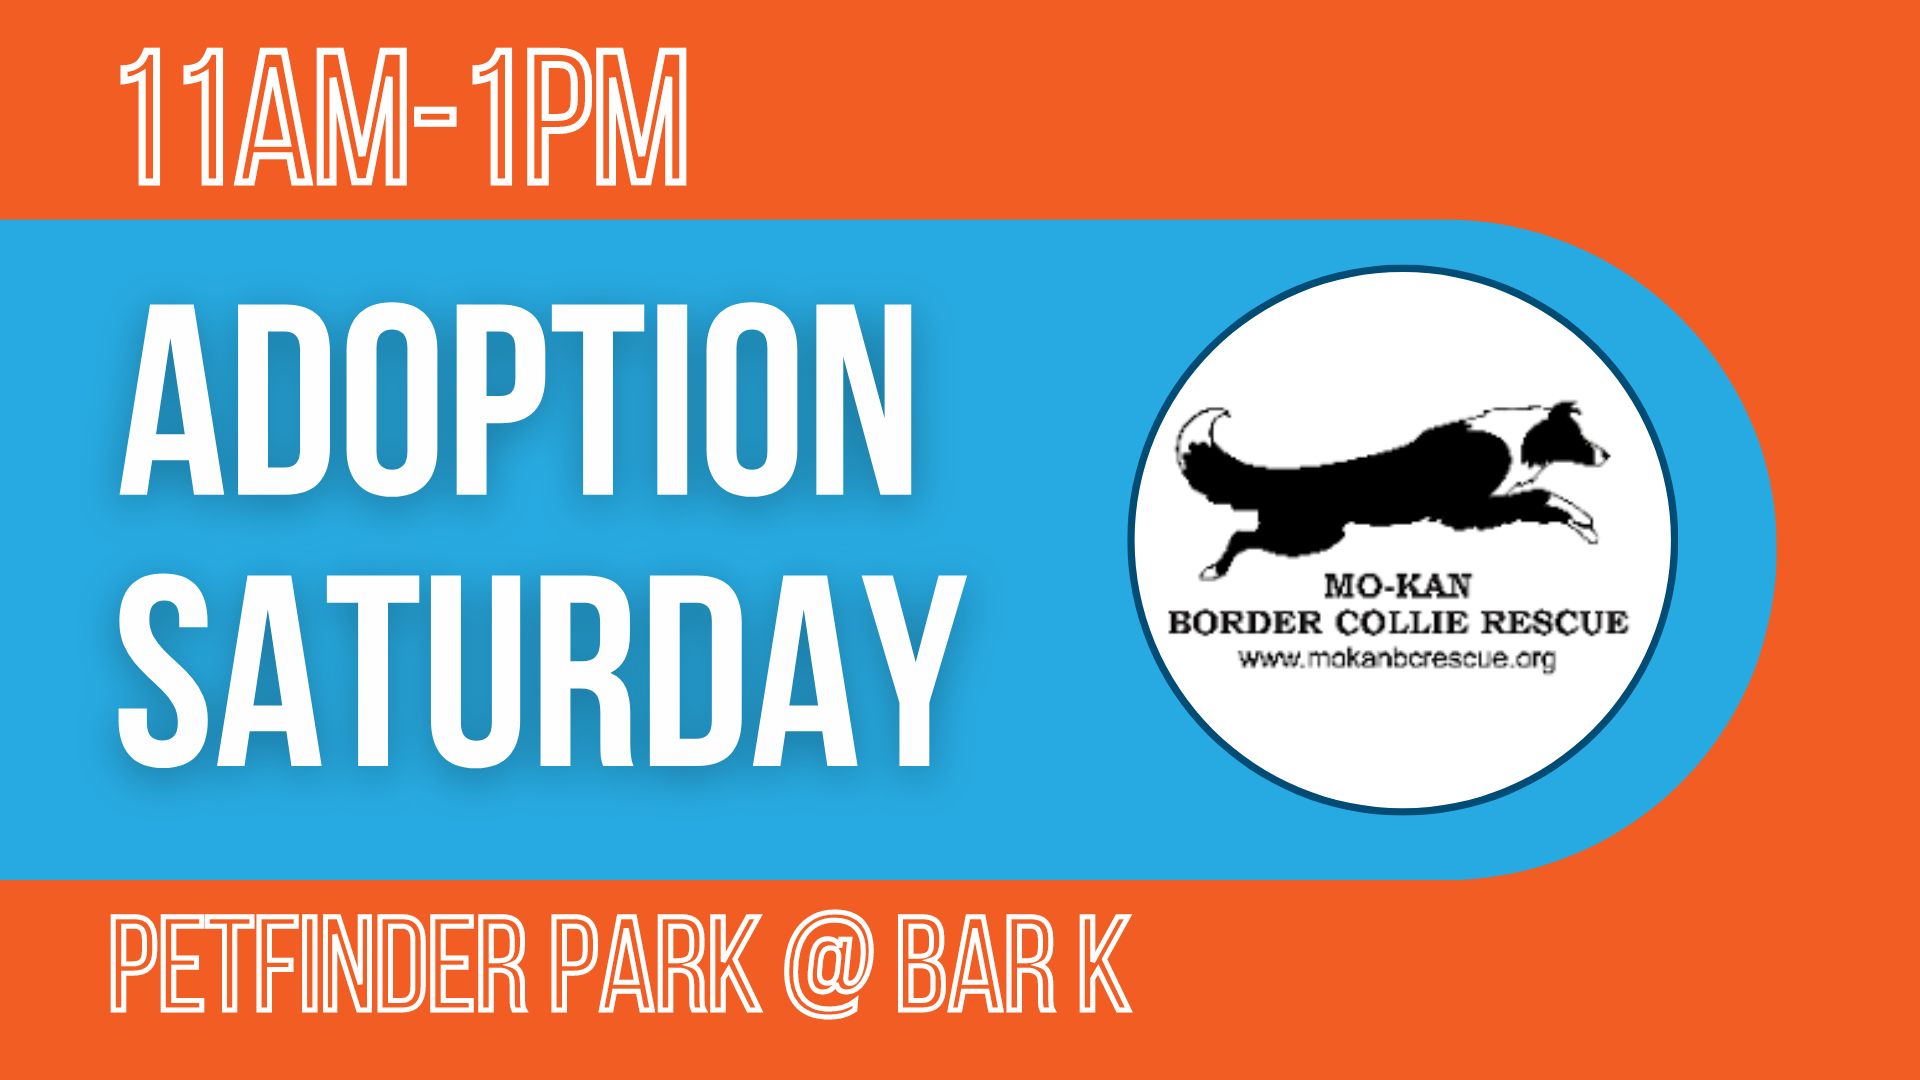 Mo-Kan Adoption Saturday 11 AM to 1 PM